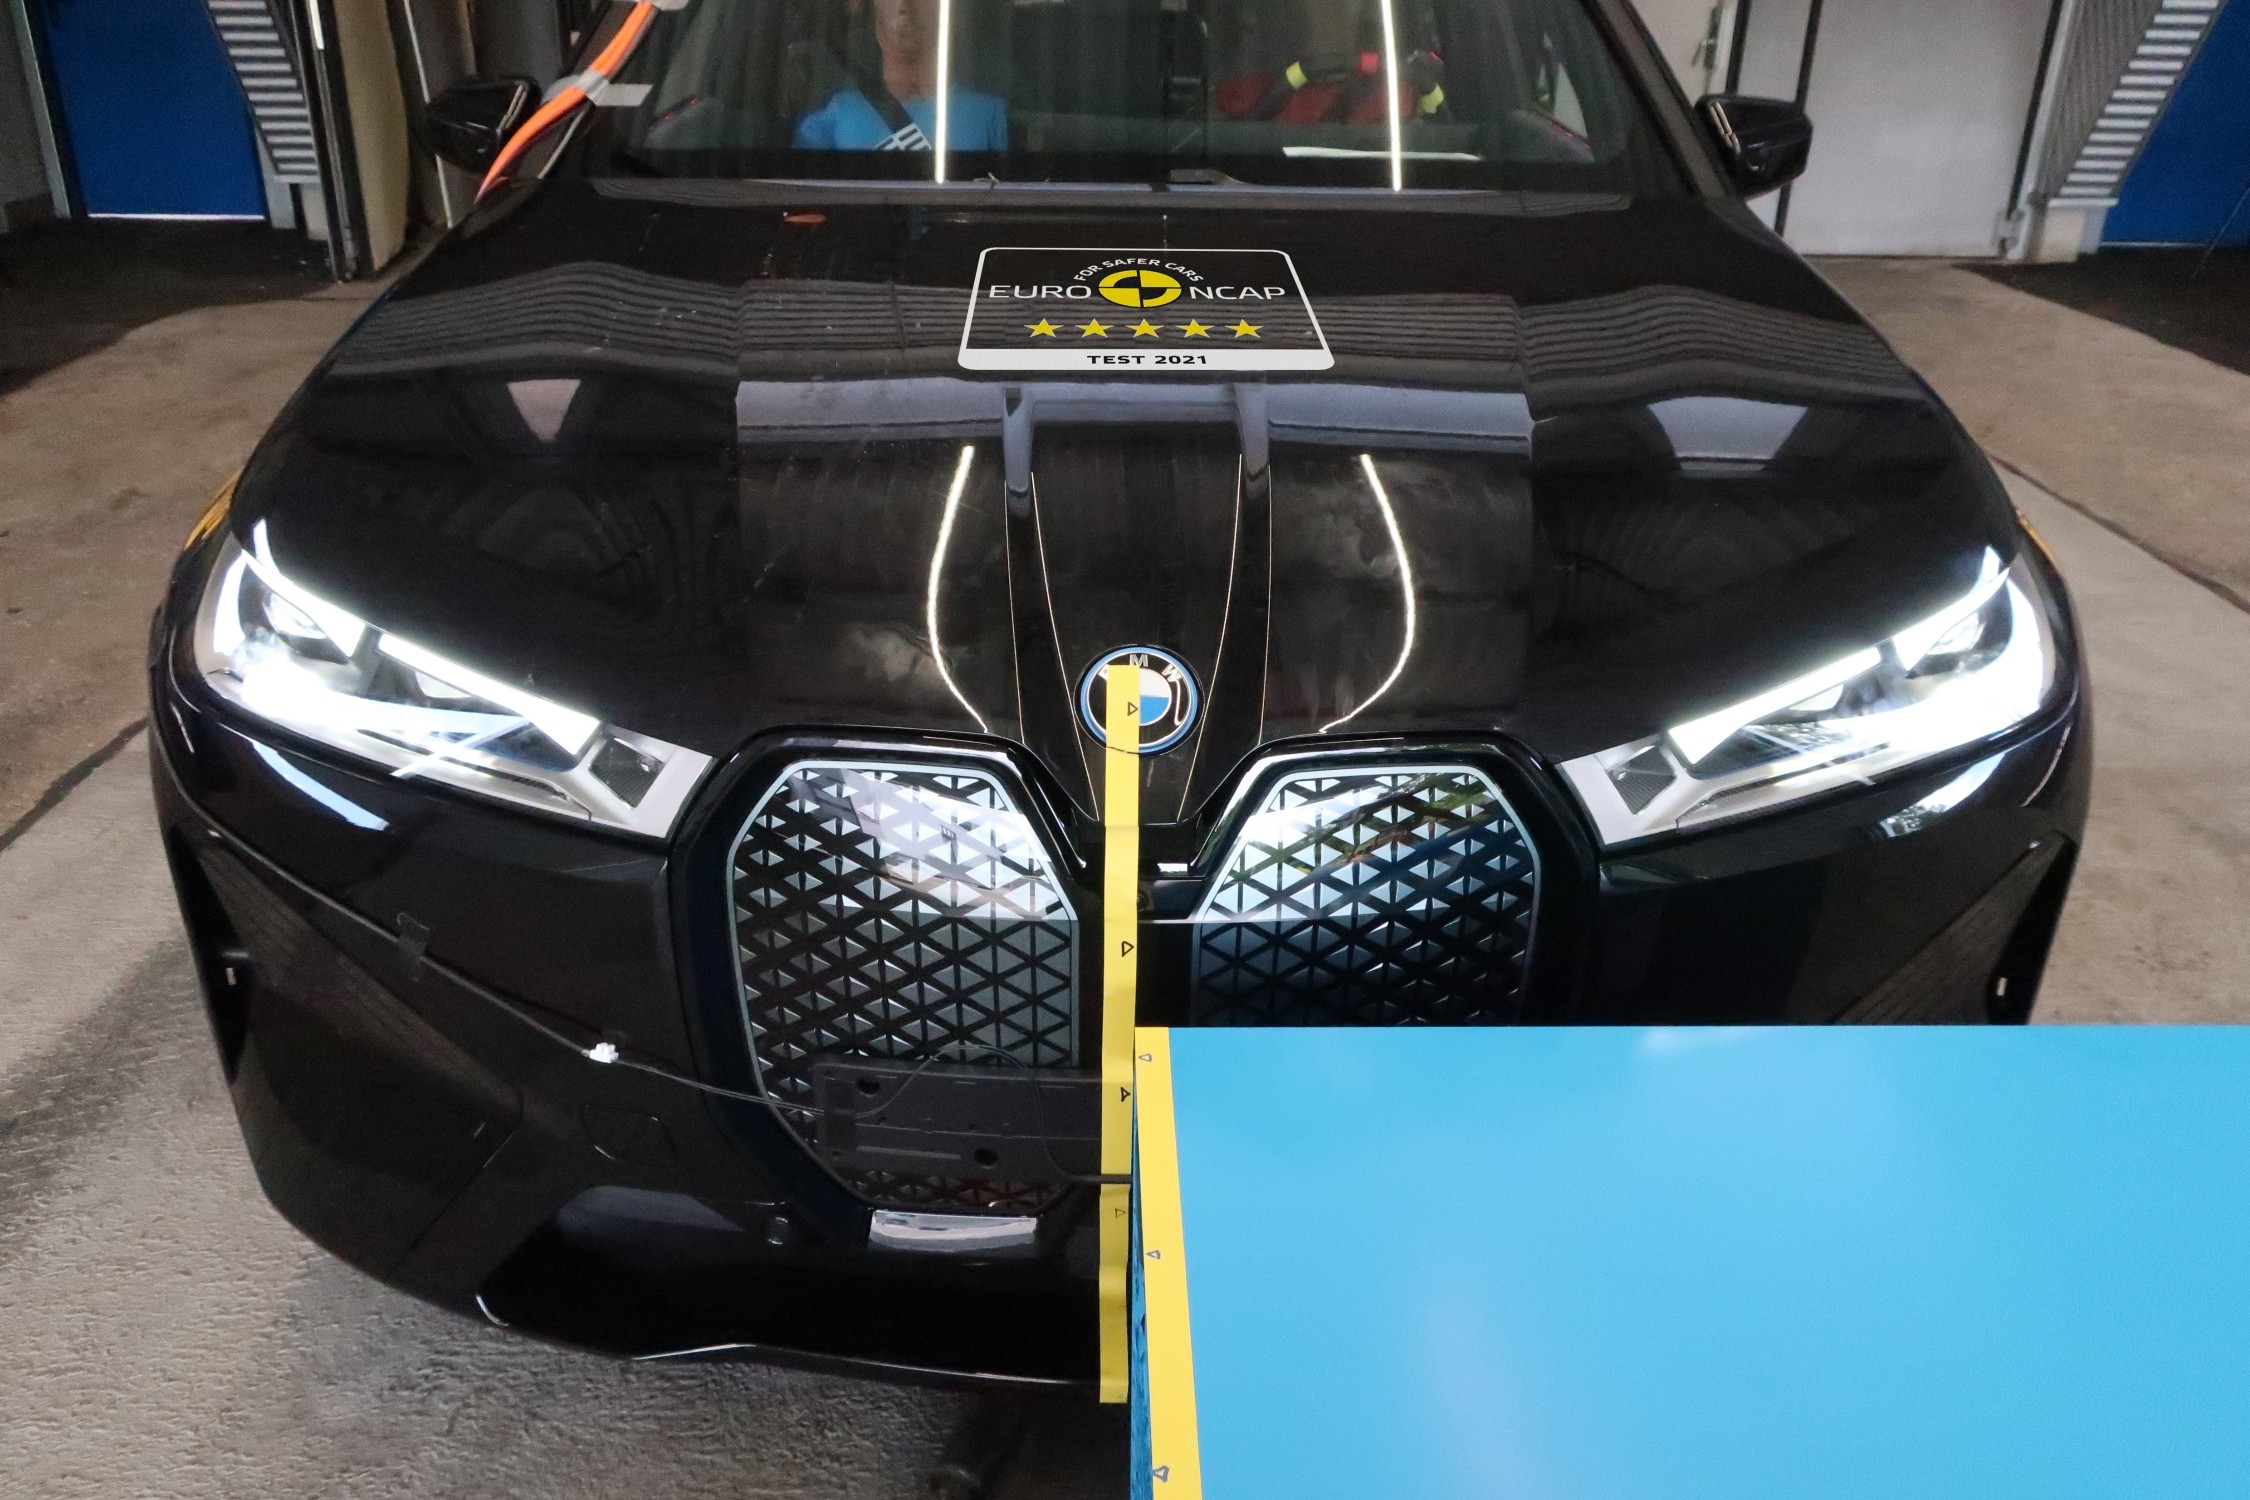 创新BMW iX获得欧盟NCAP测试五星安全评级